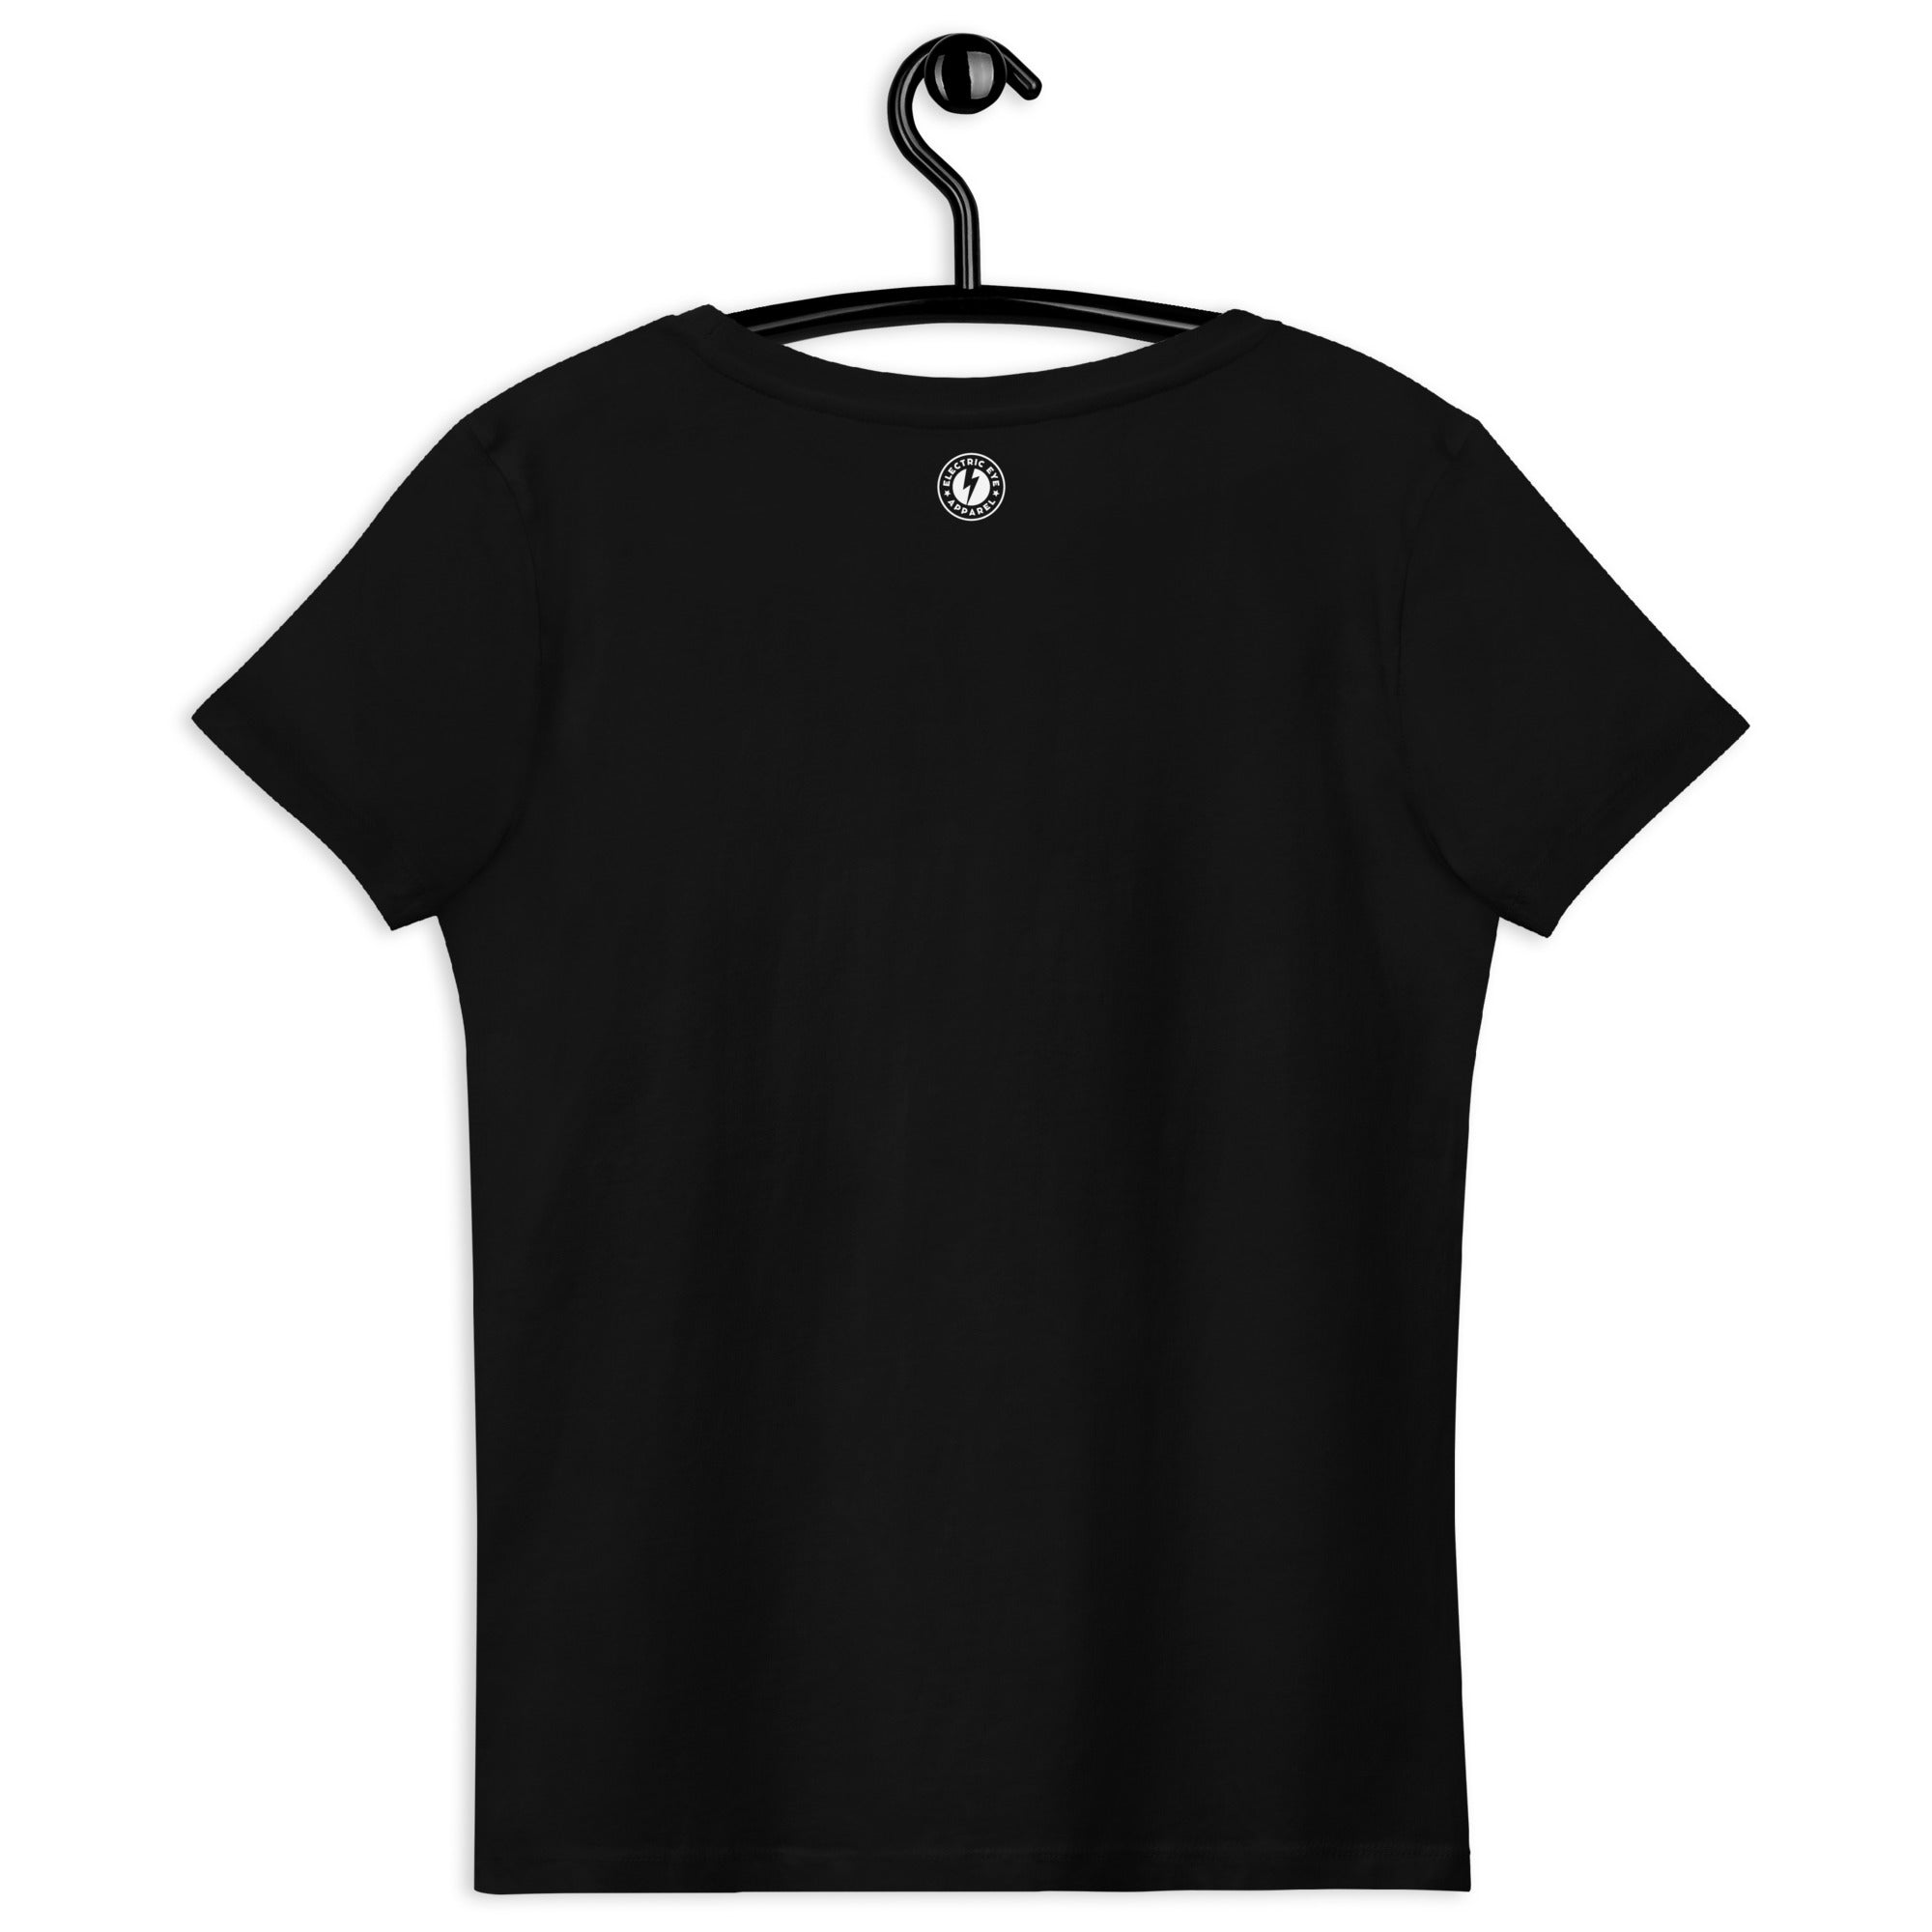 Camiseta orgánica ajustada para mujer bordada HUNKY DORY (texto blanco)